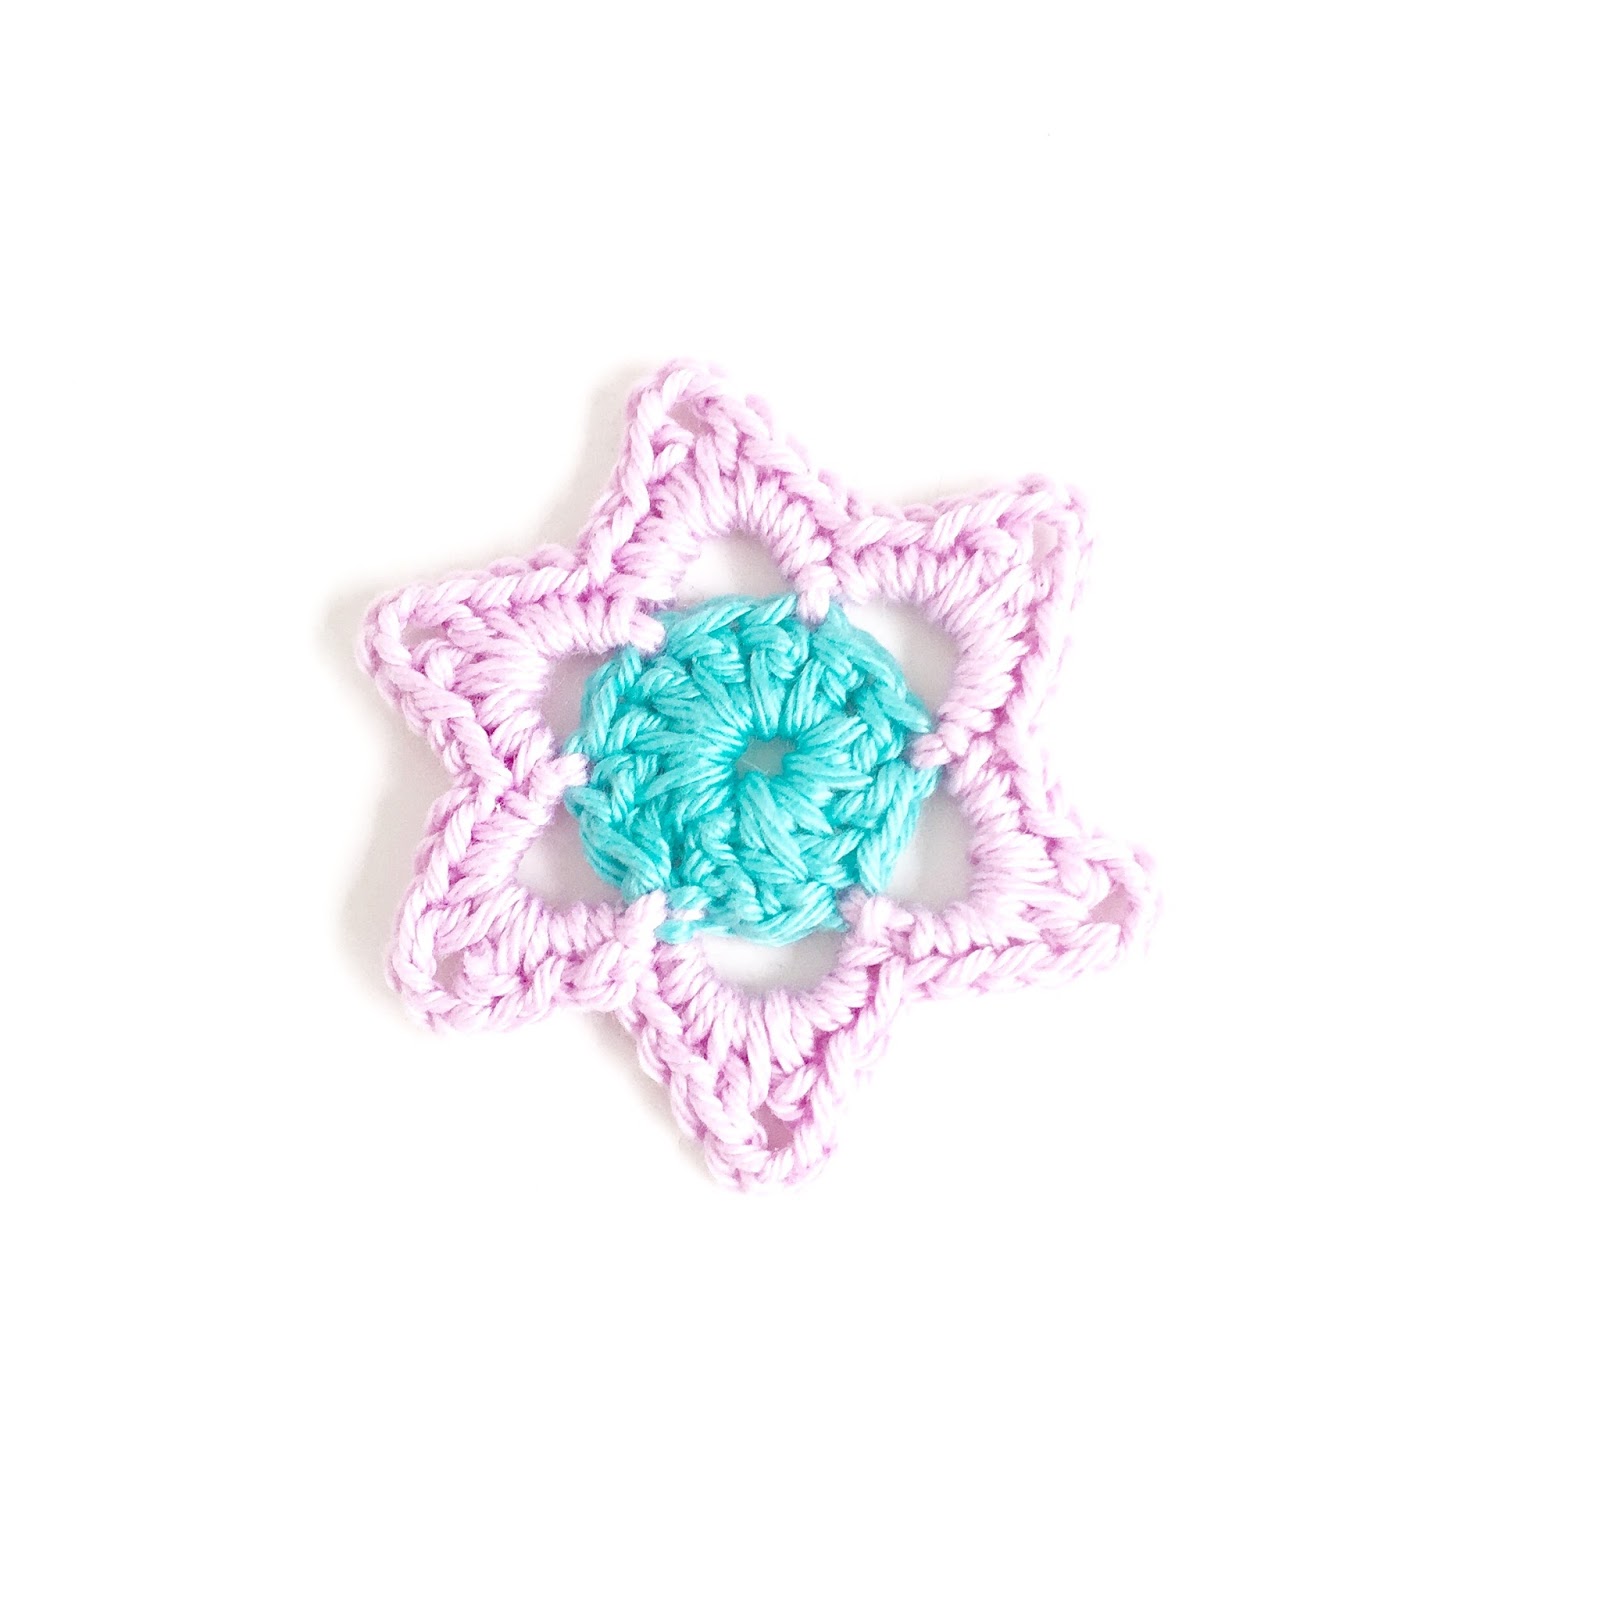 annemarie-s-haakblog-star-flower-pattern